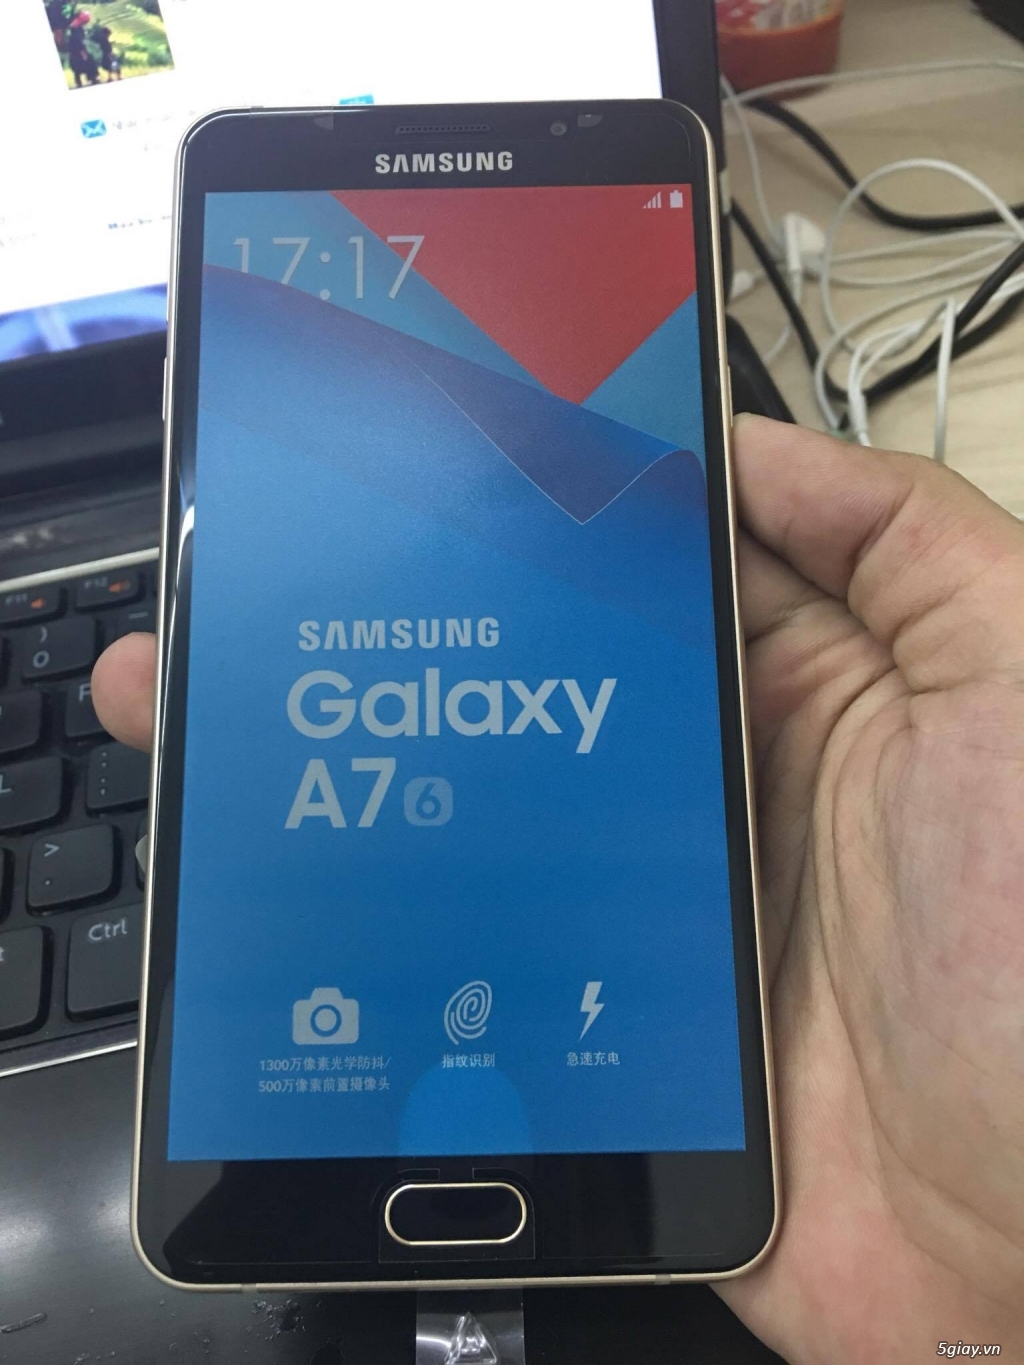 Cần bán Samsung A7 (China Mobile), Máy đẹp giá rẻ - 3